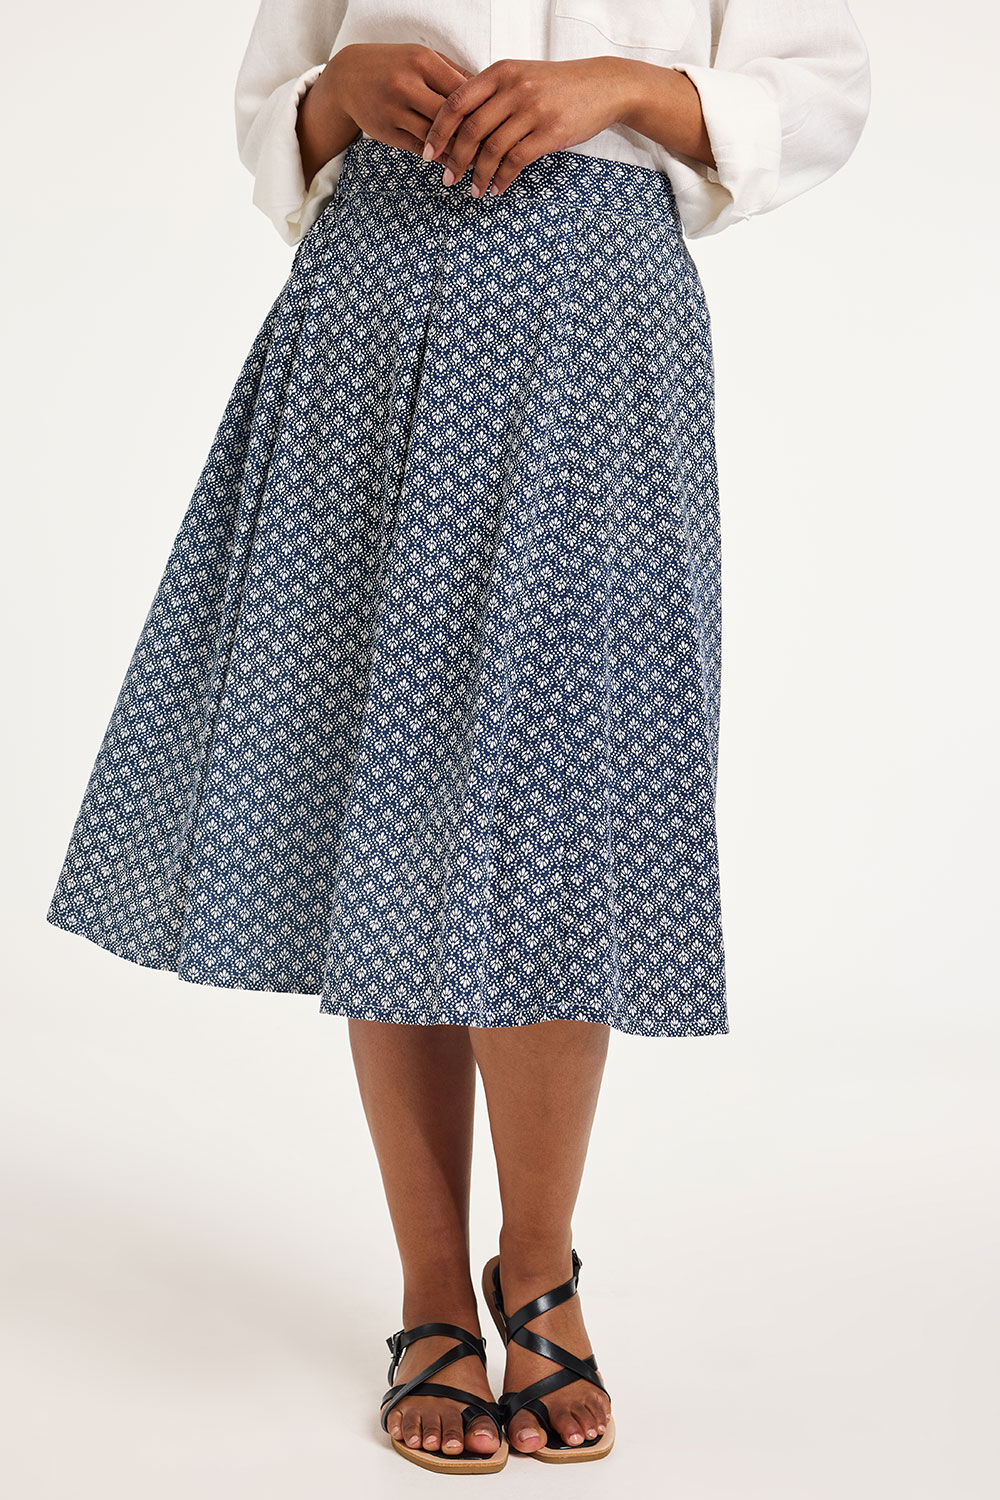 Bonmarche Navy Tile Print Linen Flippy Skirt, Size: 14